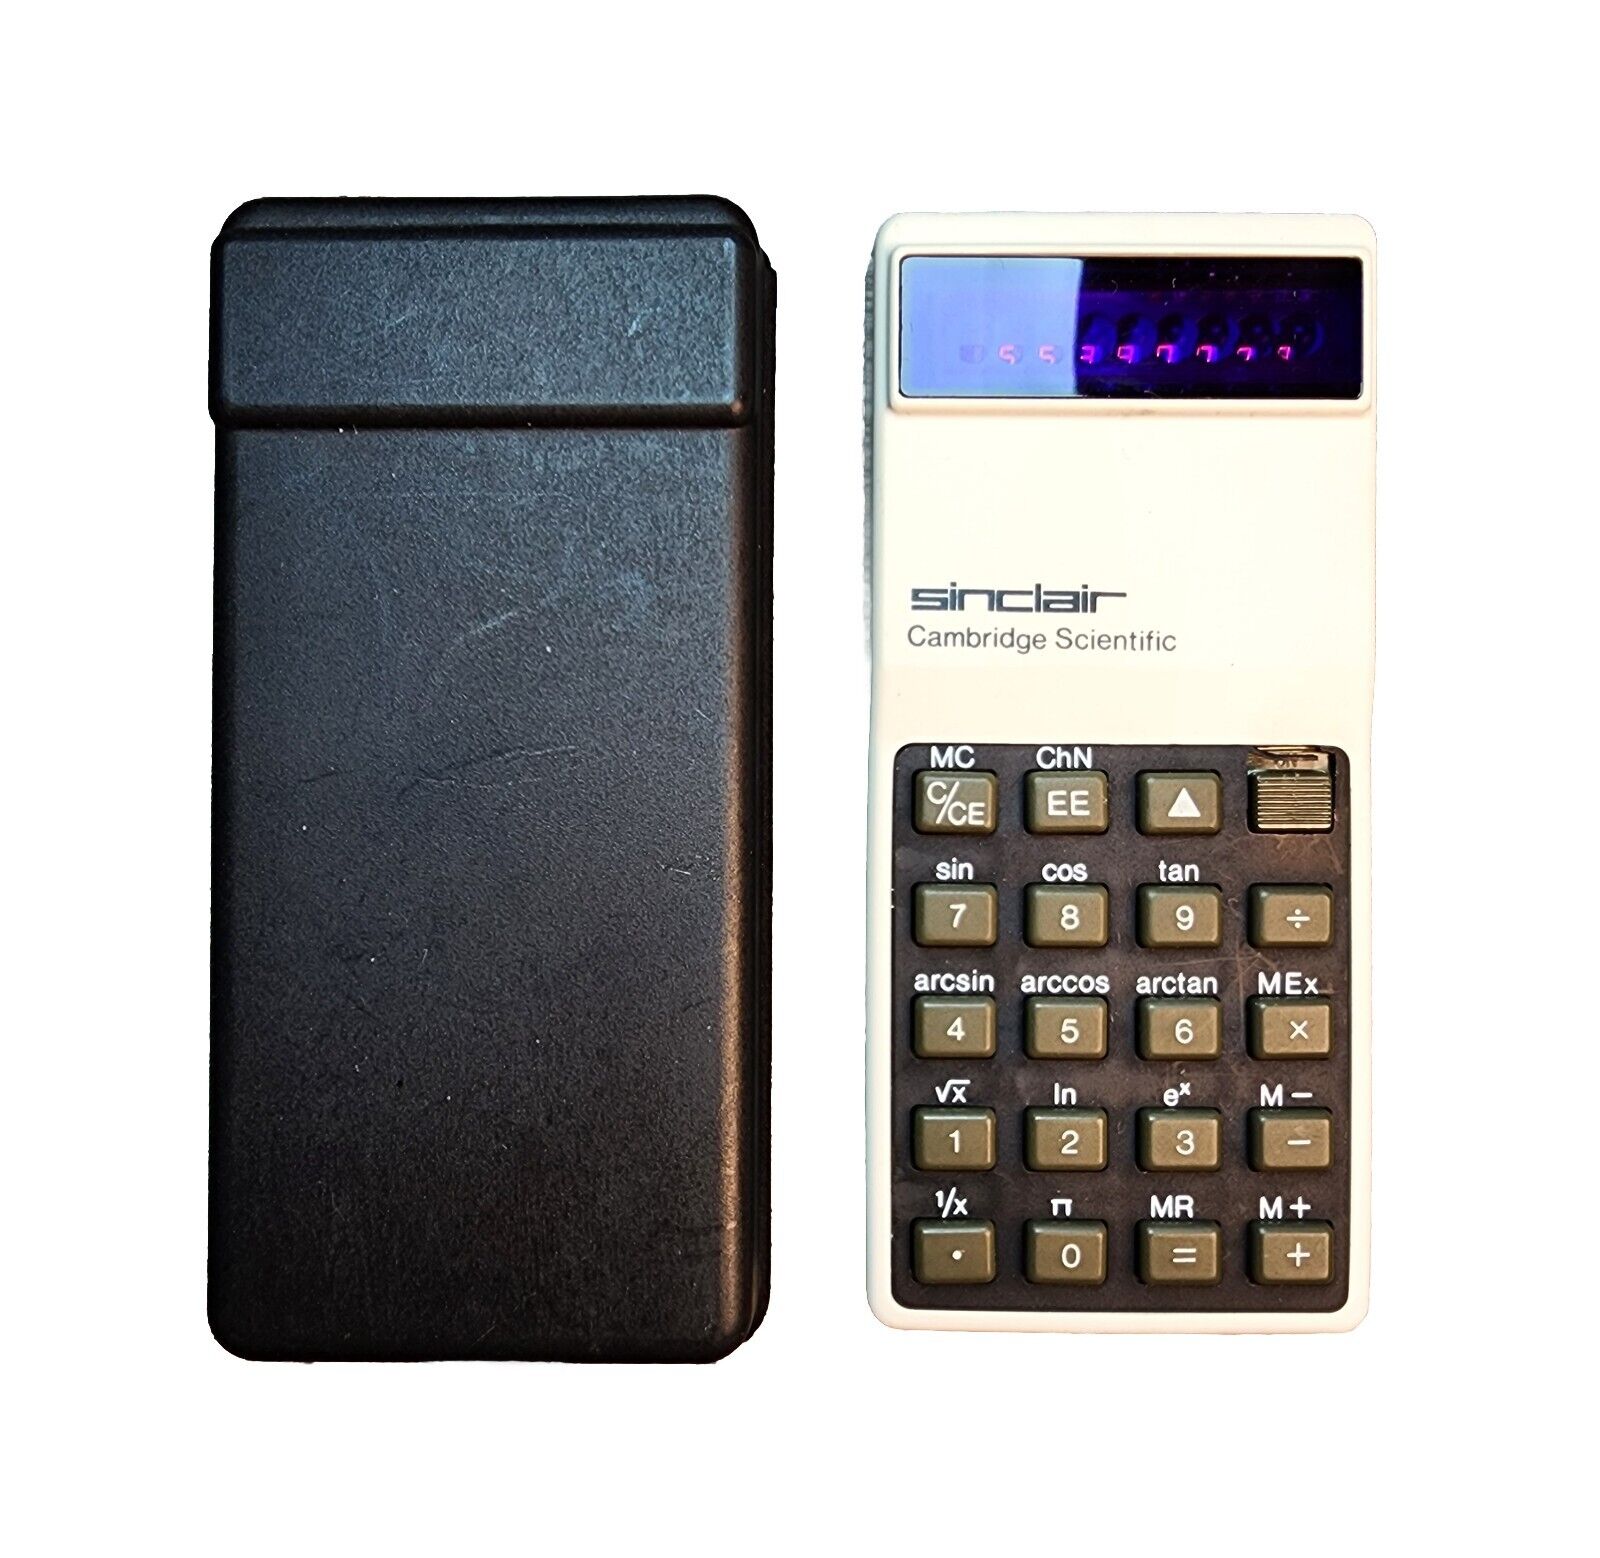 Vintage Sinclair Cambridge Scientific Calculator w/ Case